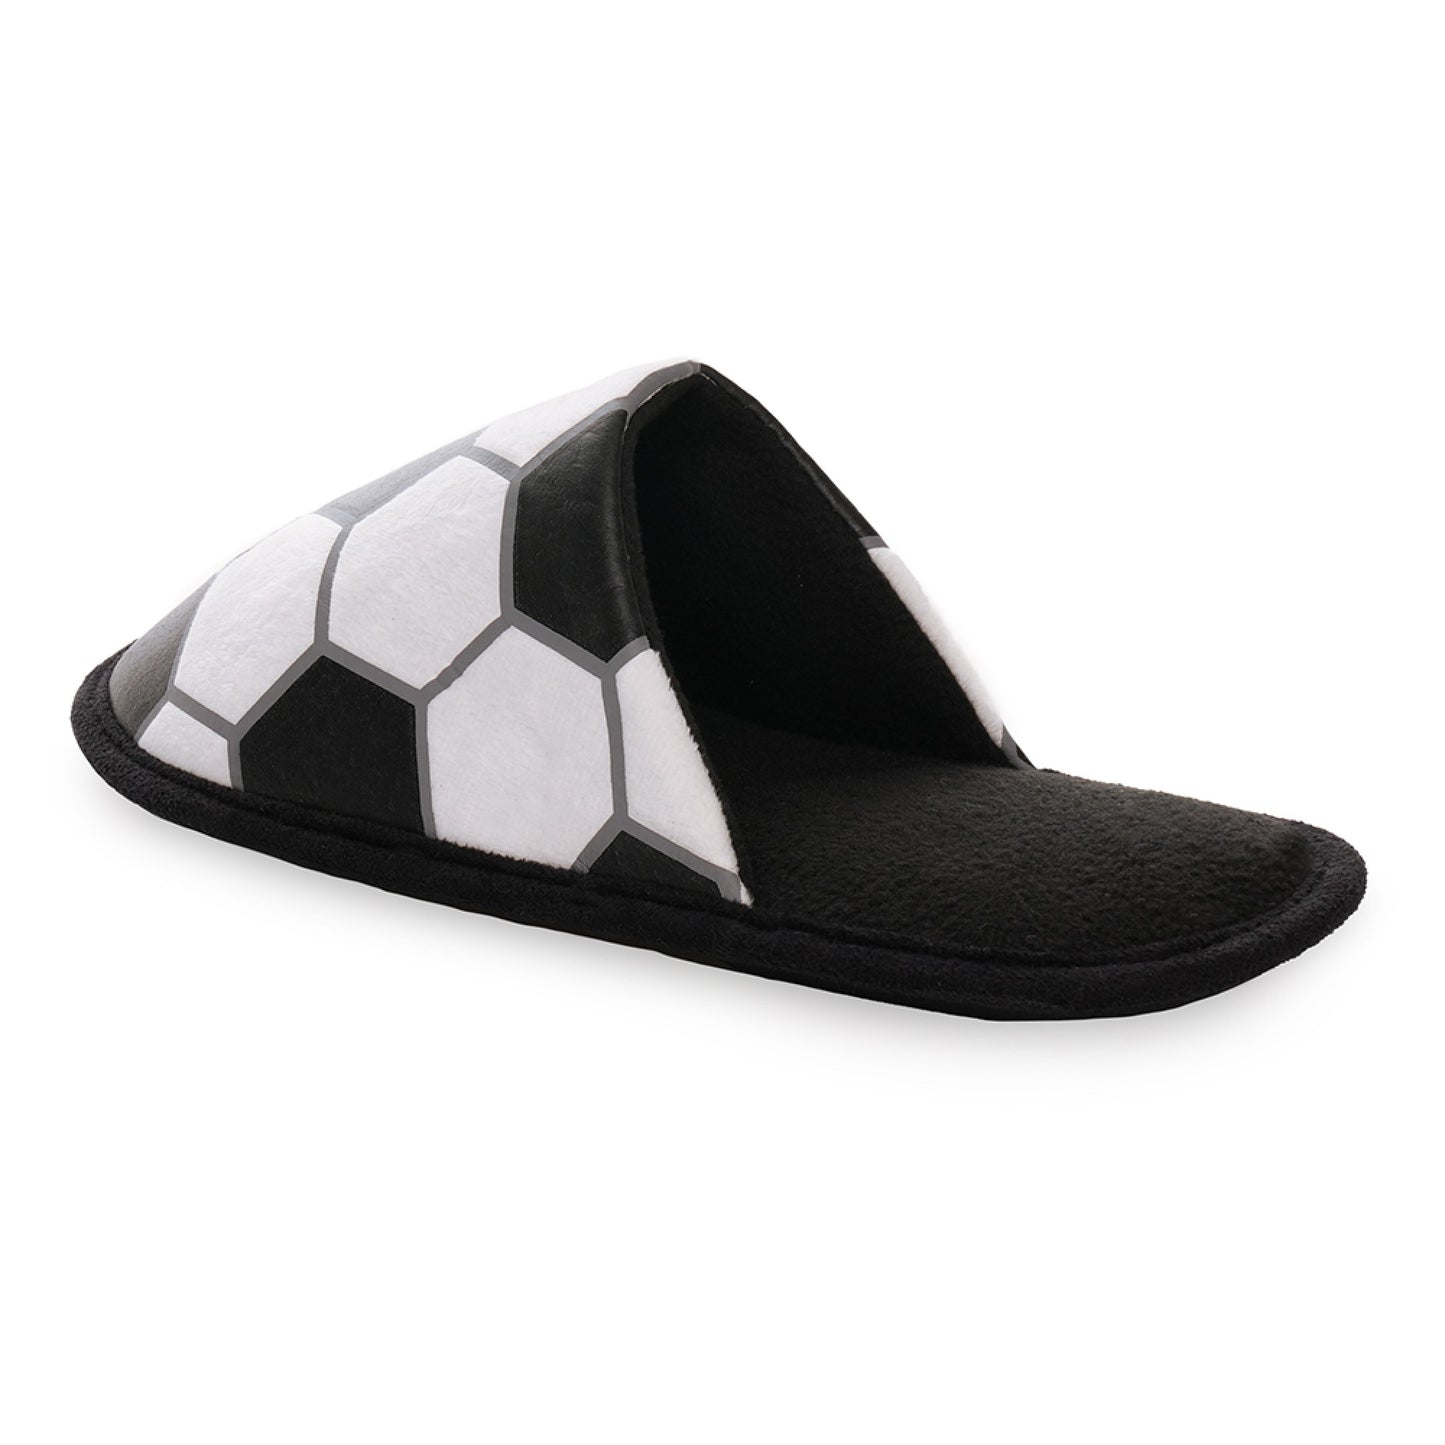 Men's Football Mule Slippers Black and White Soccer Ball Design Slip-On